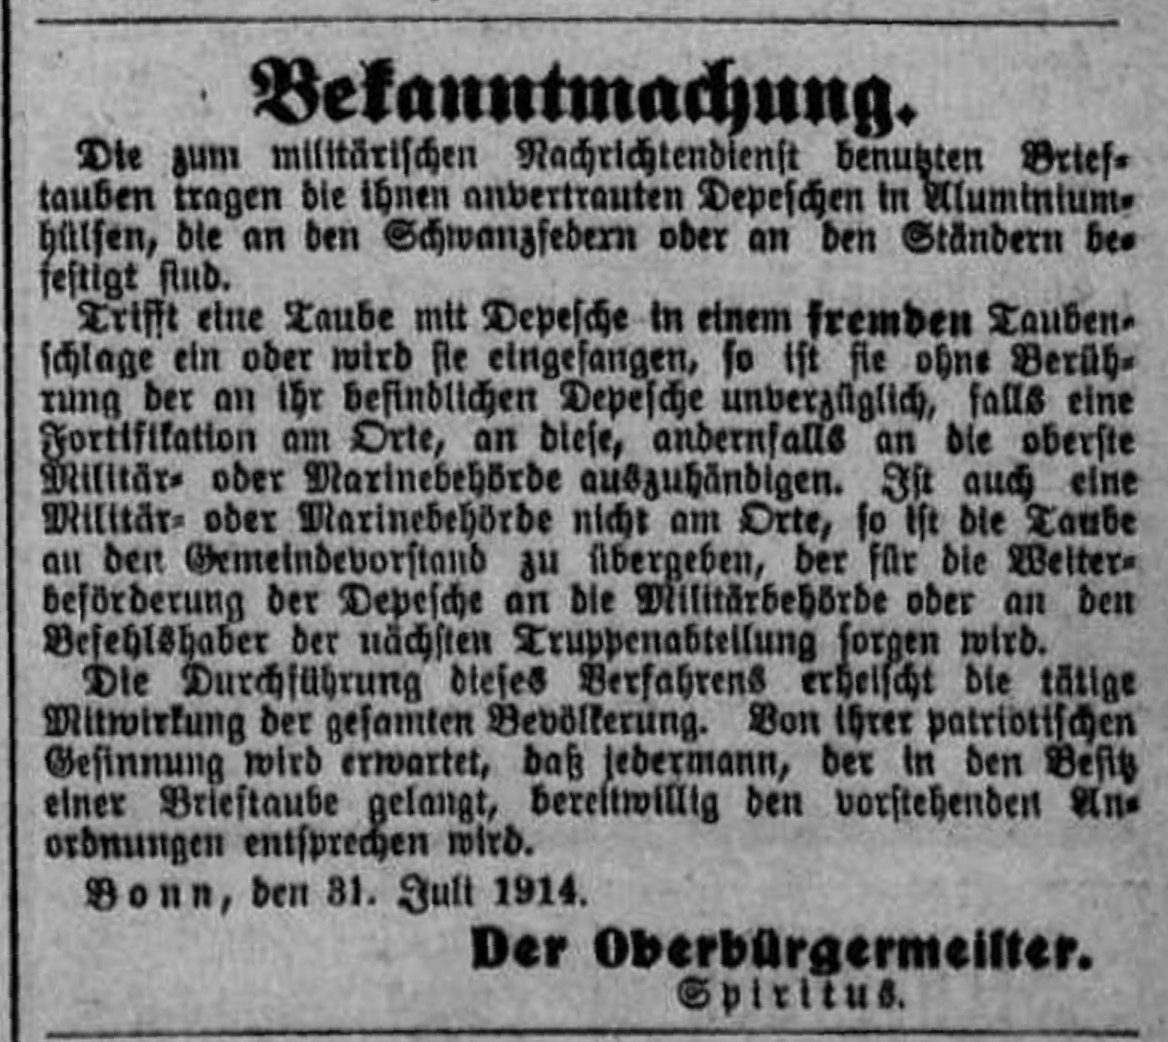 Amtliche Bekanntmachung in der Bonner Zeitung vom 2. August 1914